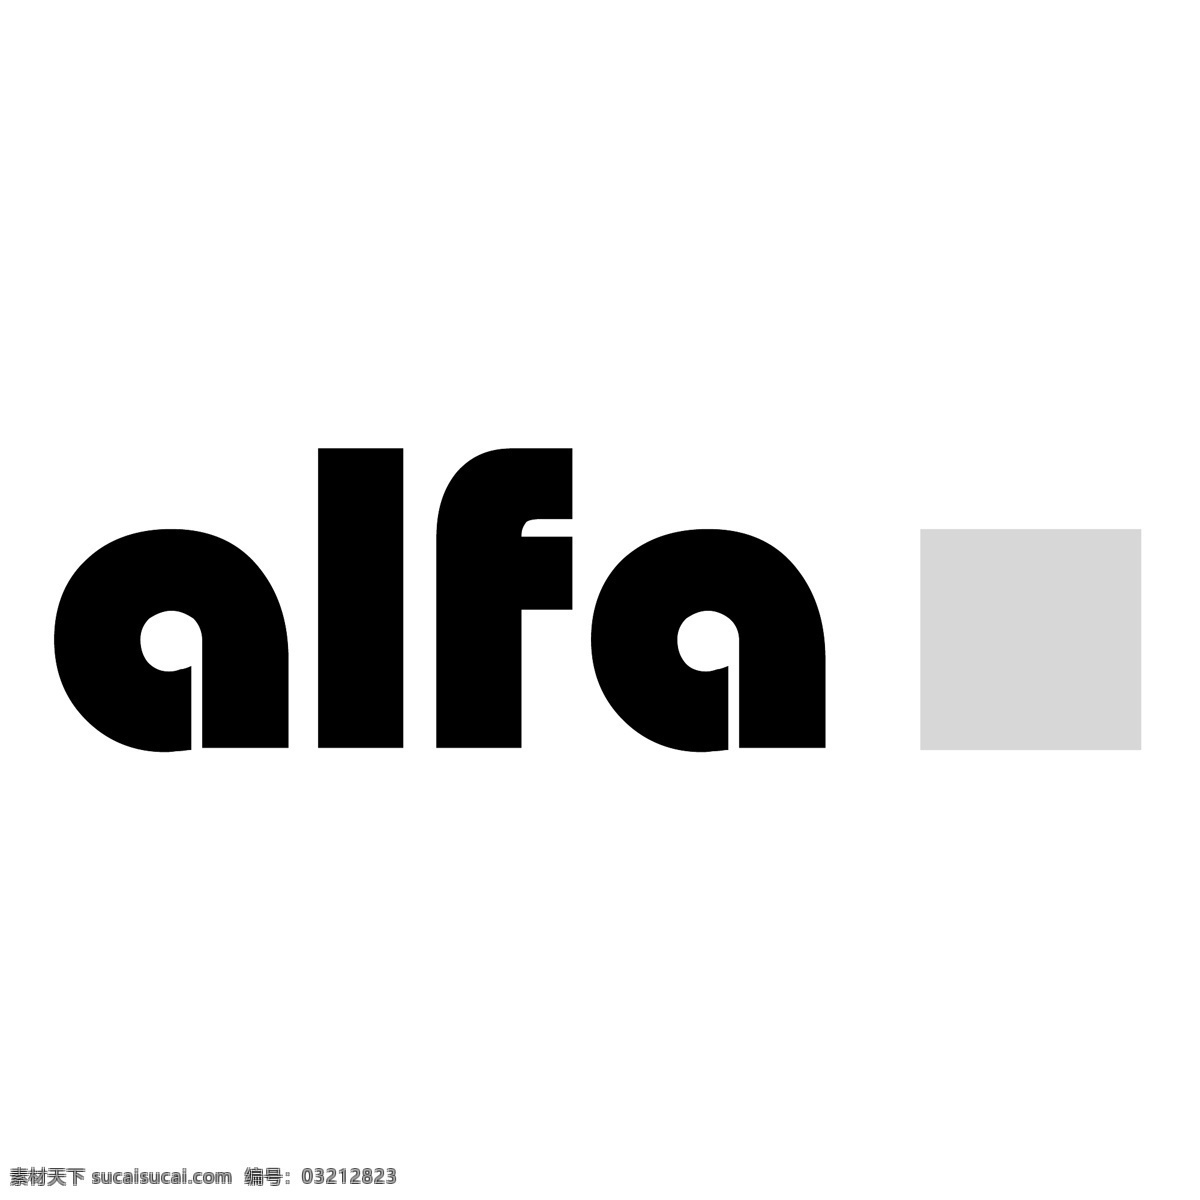 阿尔法3 阿尔法 罗密欧 标志 矢量 giulietta logo 格式 spider 汽车 矢量图 建筑家居